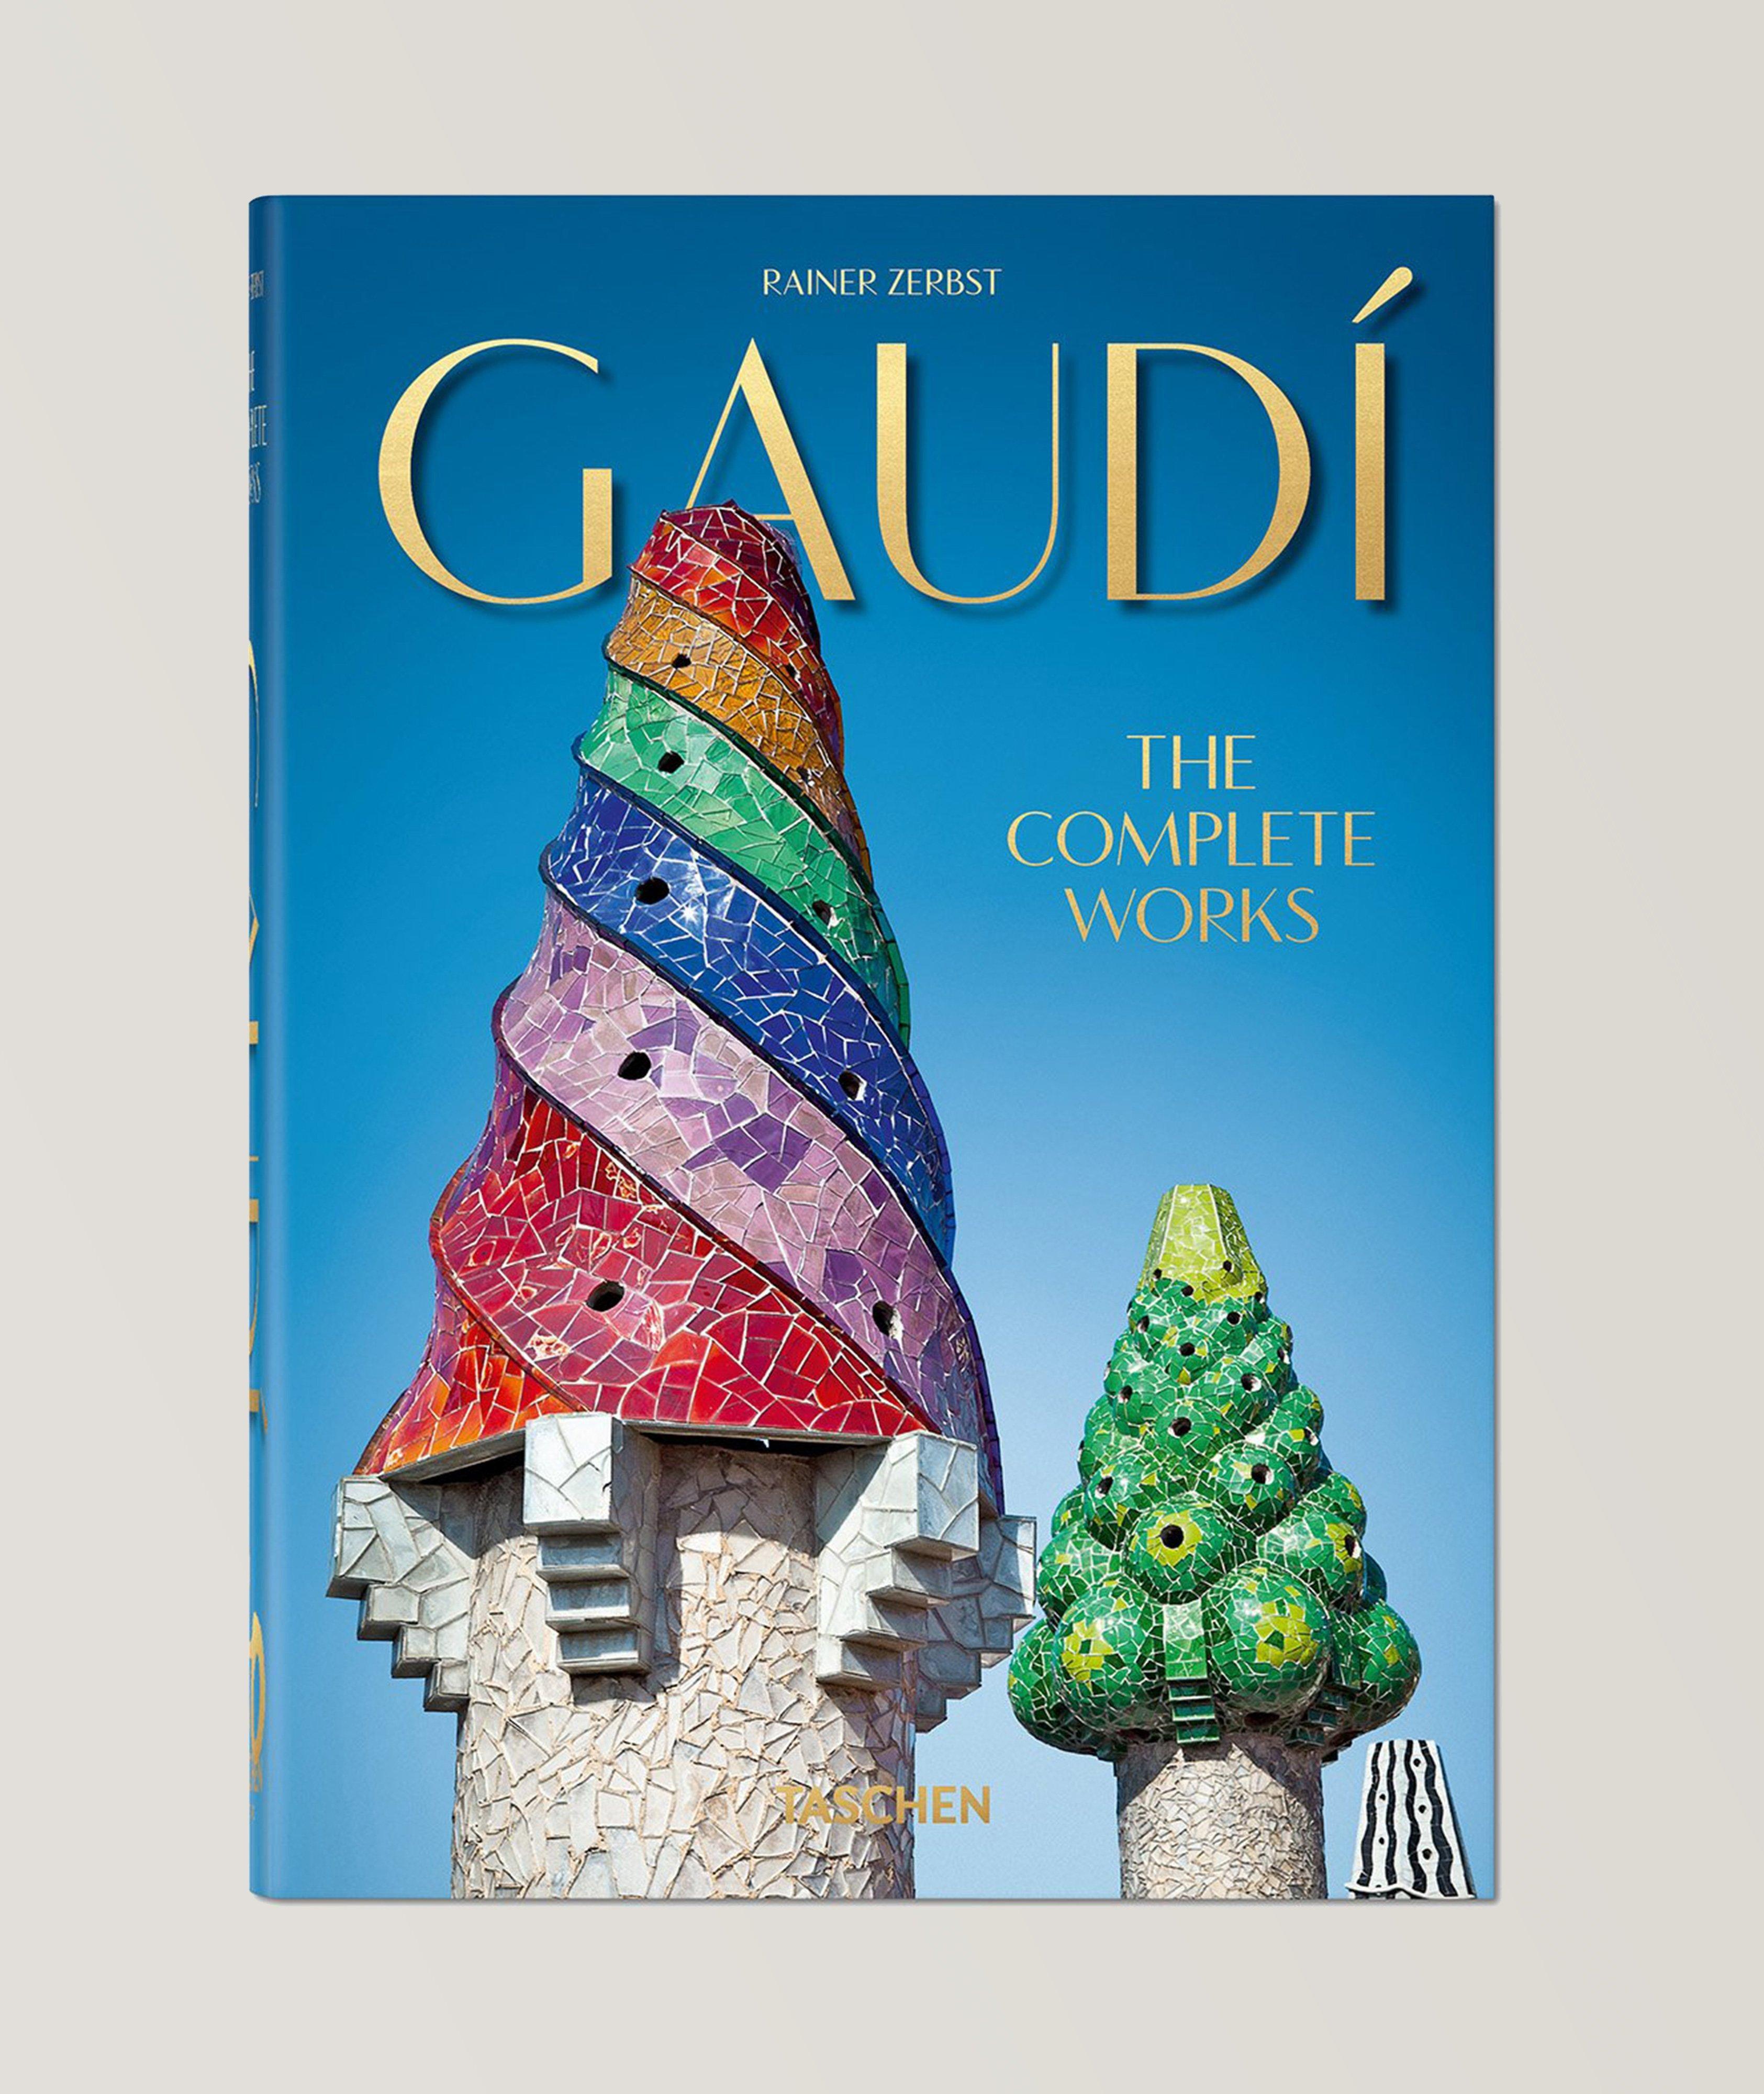 Livre « Gaudí », édition anniversaire image 0